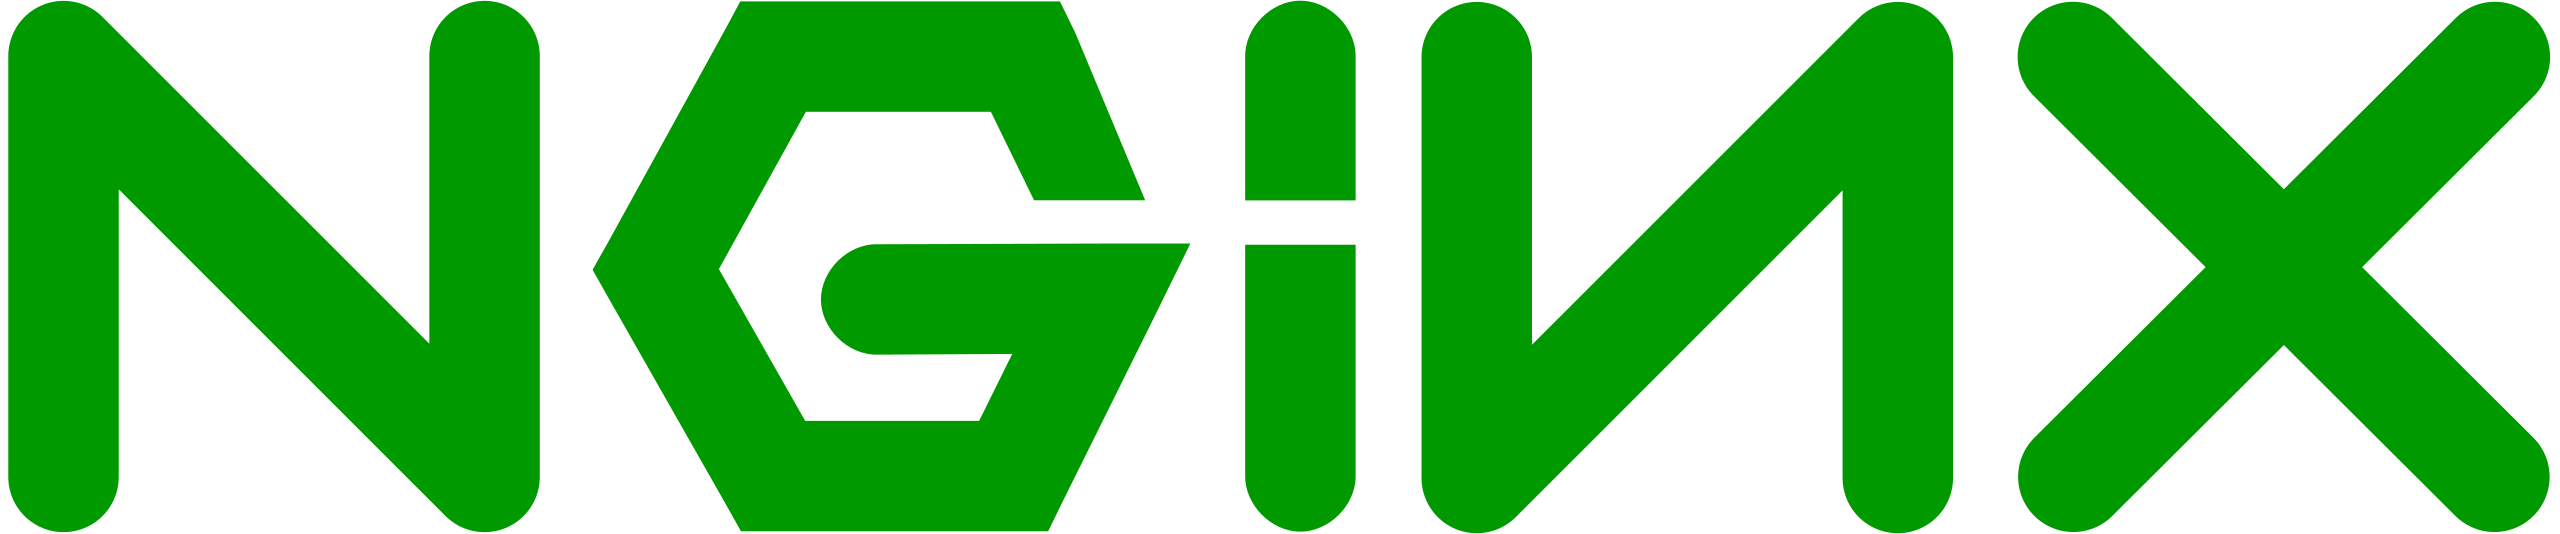 nginx logó